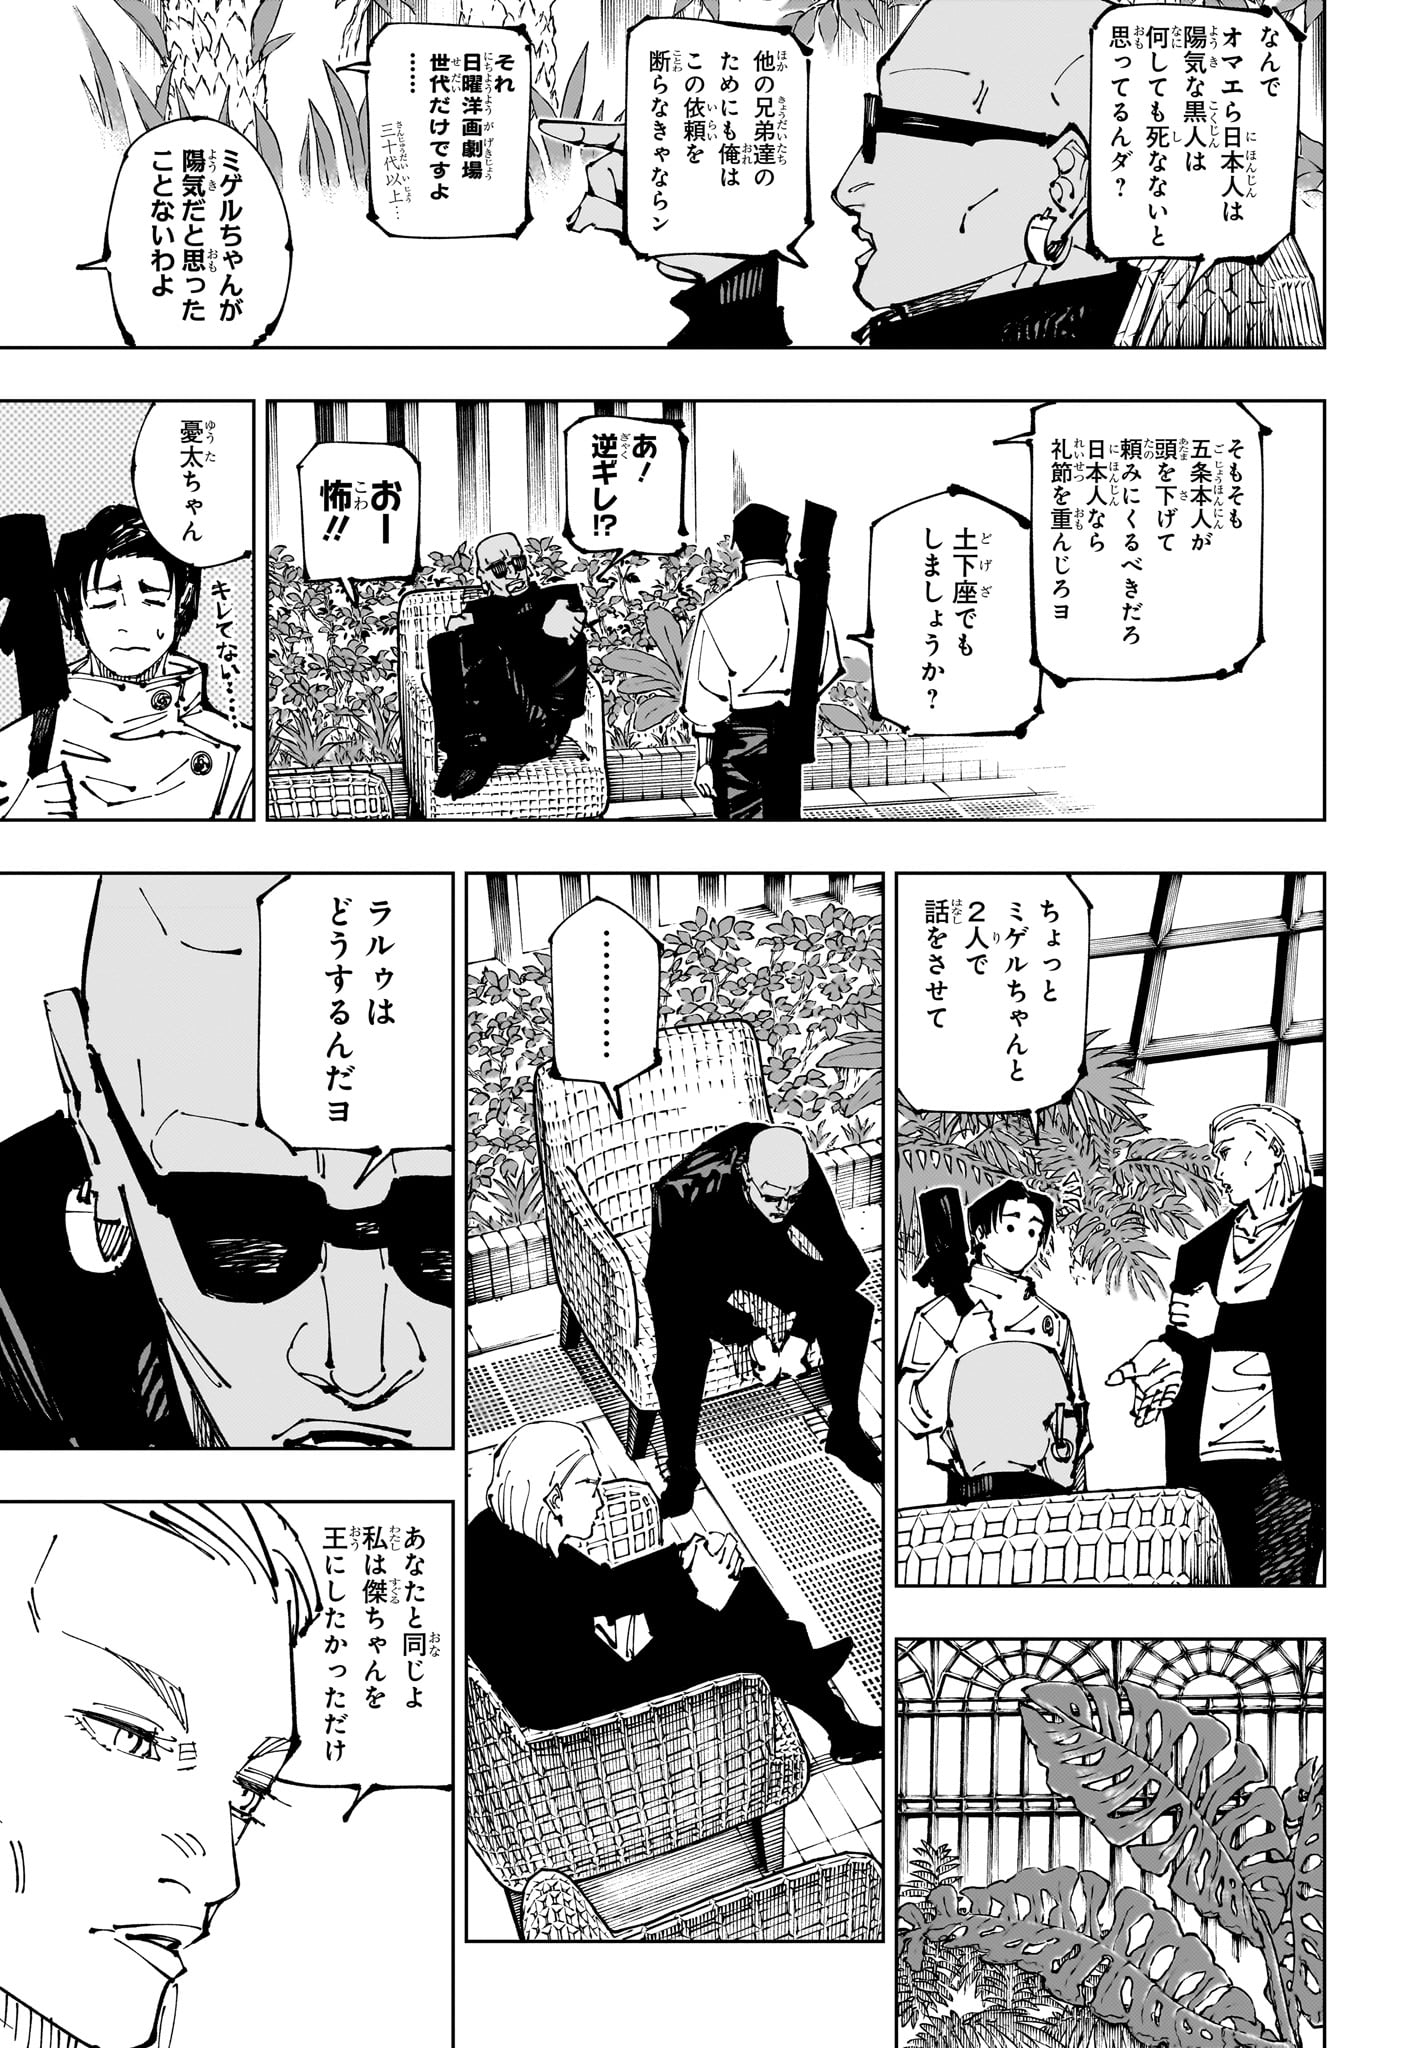 Jujutsu Kaisen - Chapter 255 - Page 3